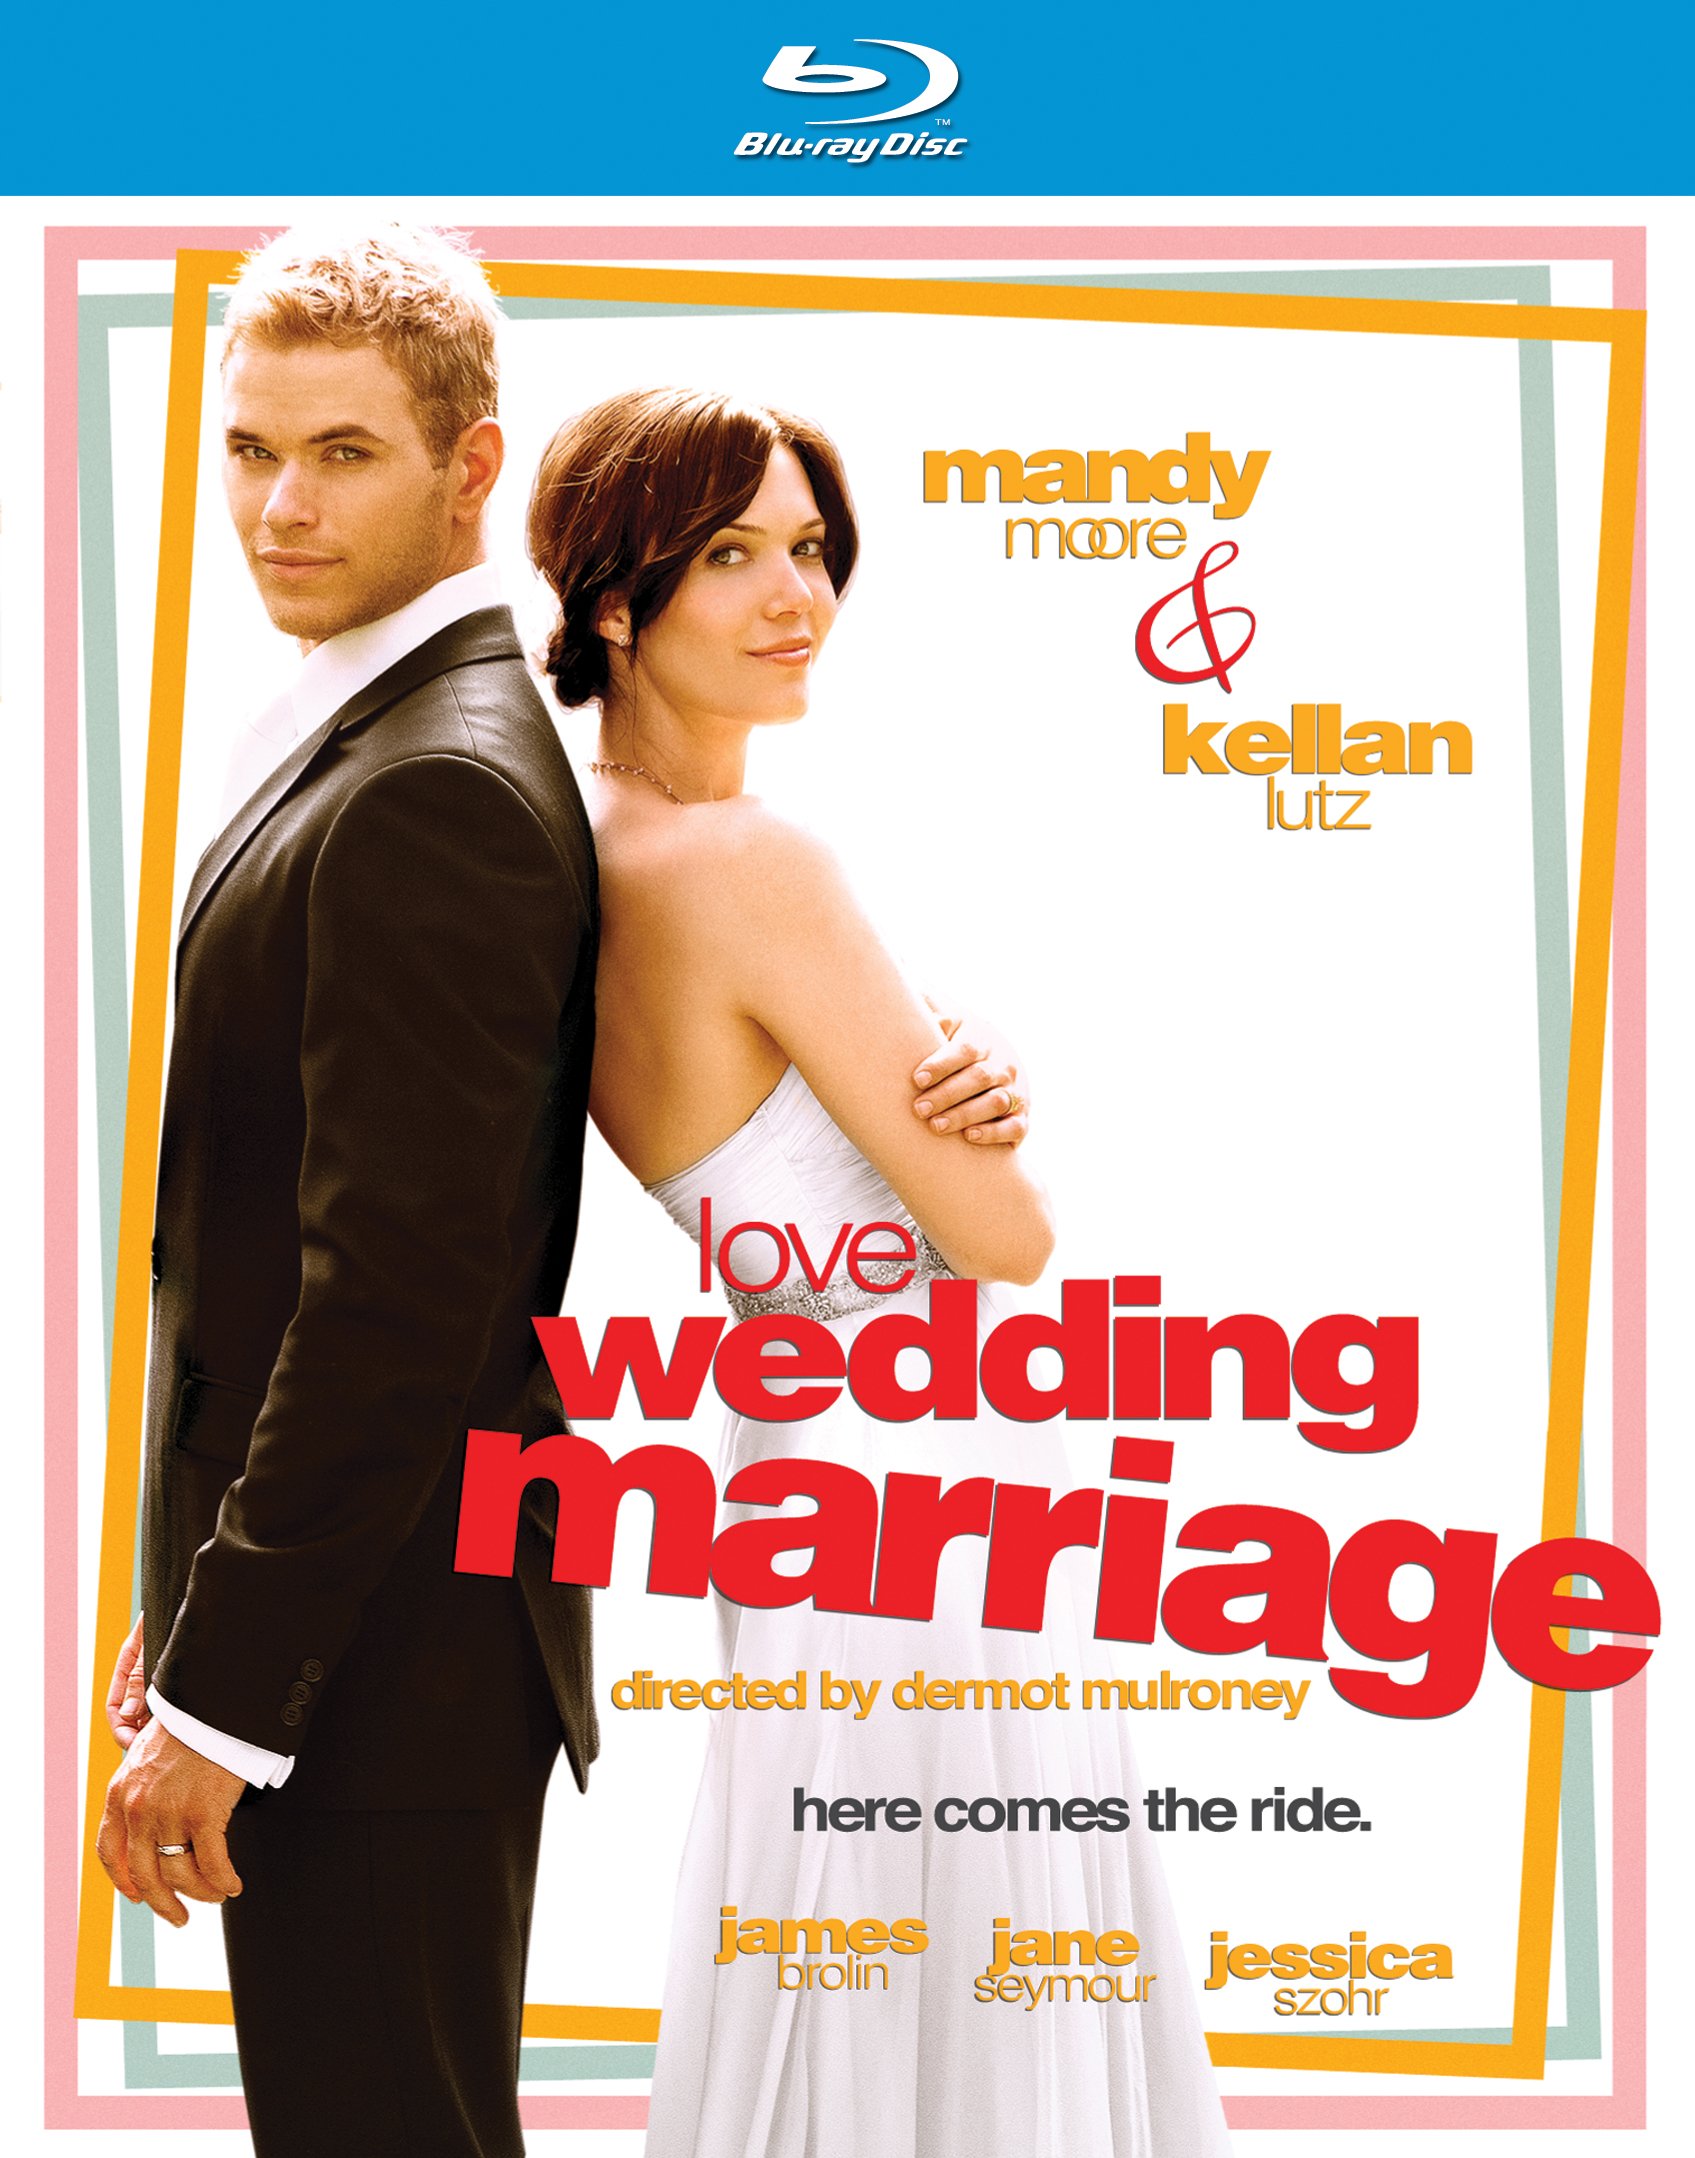 Название истории любви. Сначала любовь, потом свадьба 2012 Постер. Сначала свадьба потом любовь 3. Just married Blu-ray Cover.